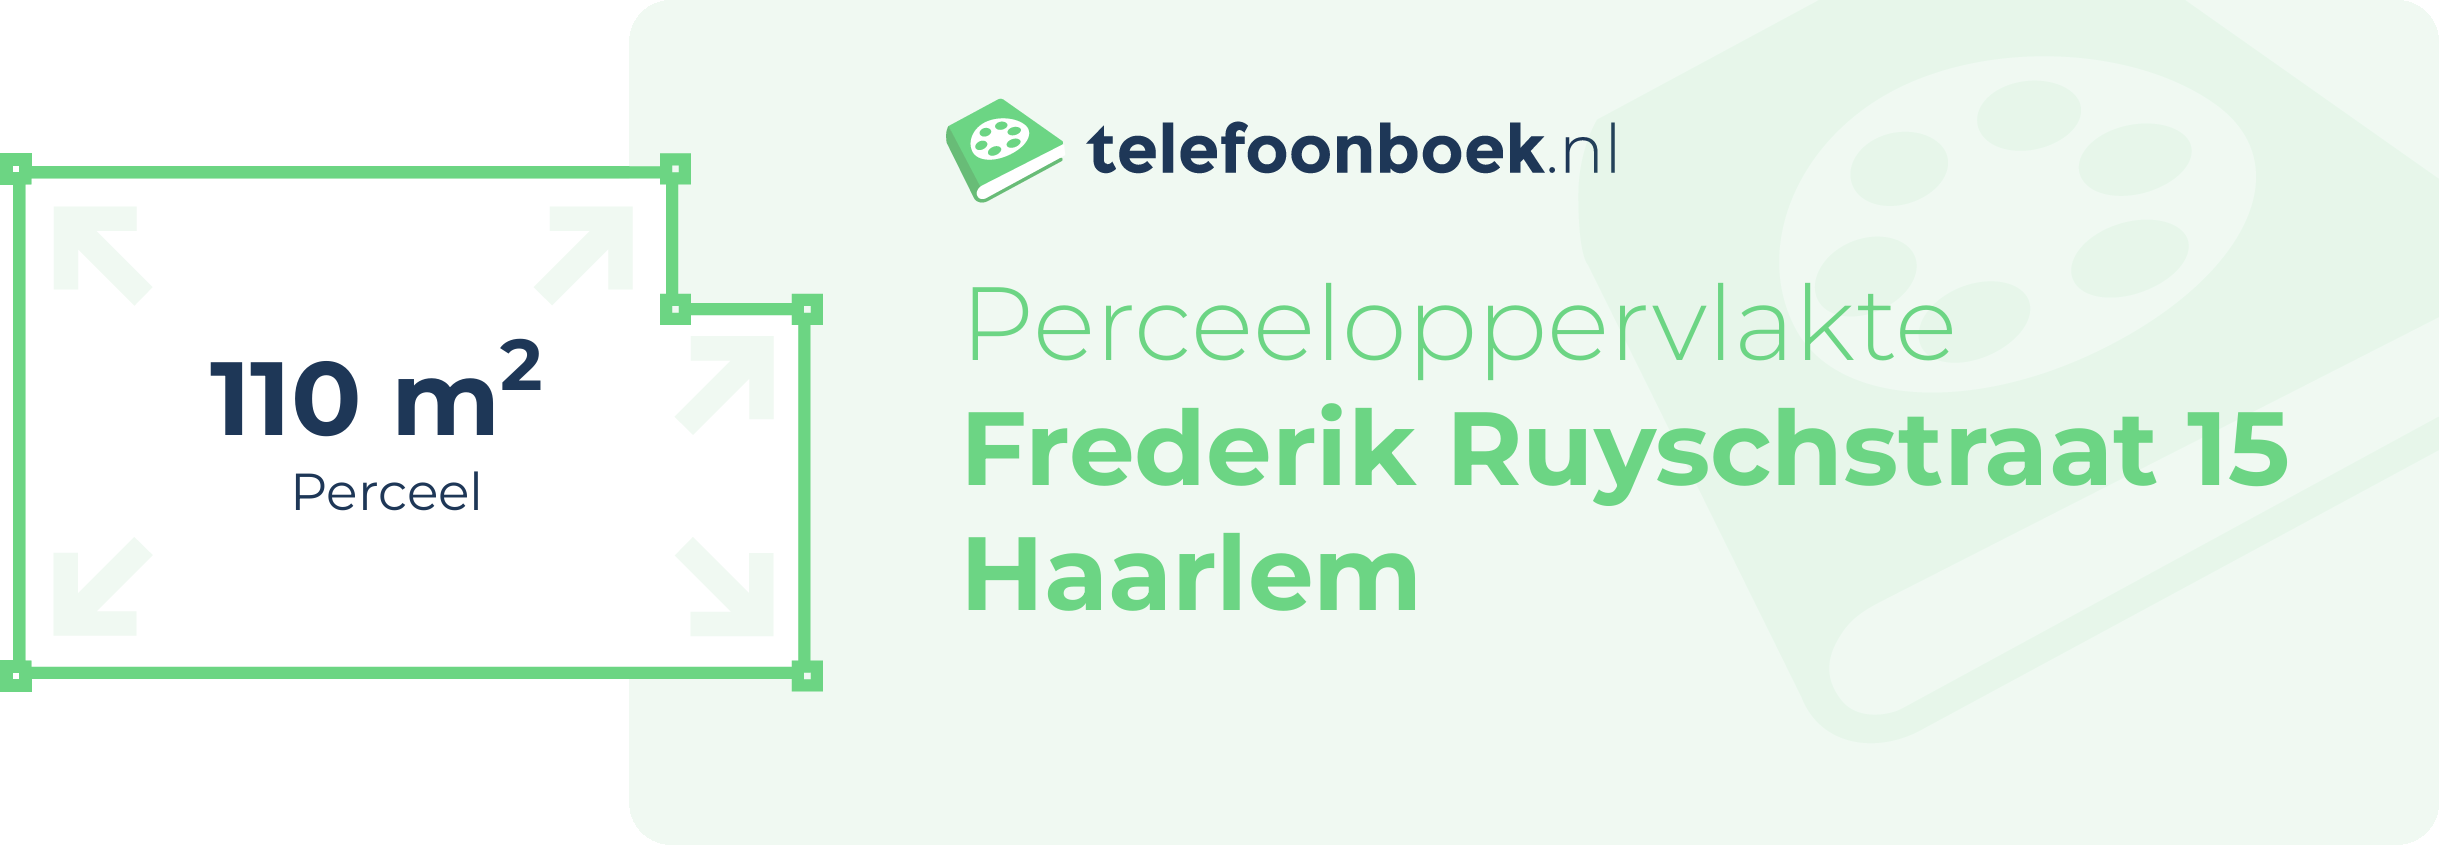 Perceeloppervlakte Frederik Ruyschstraat 15 Haarlem